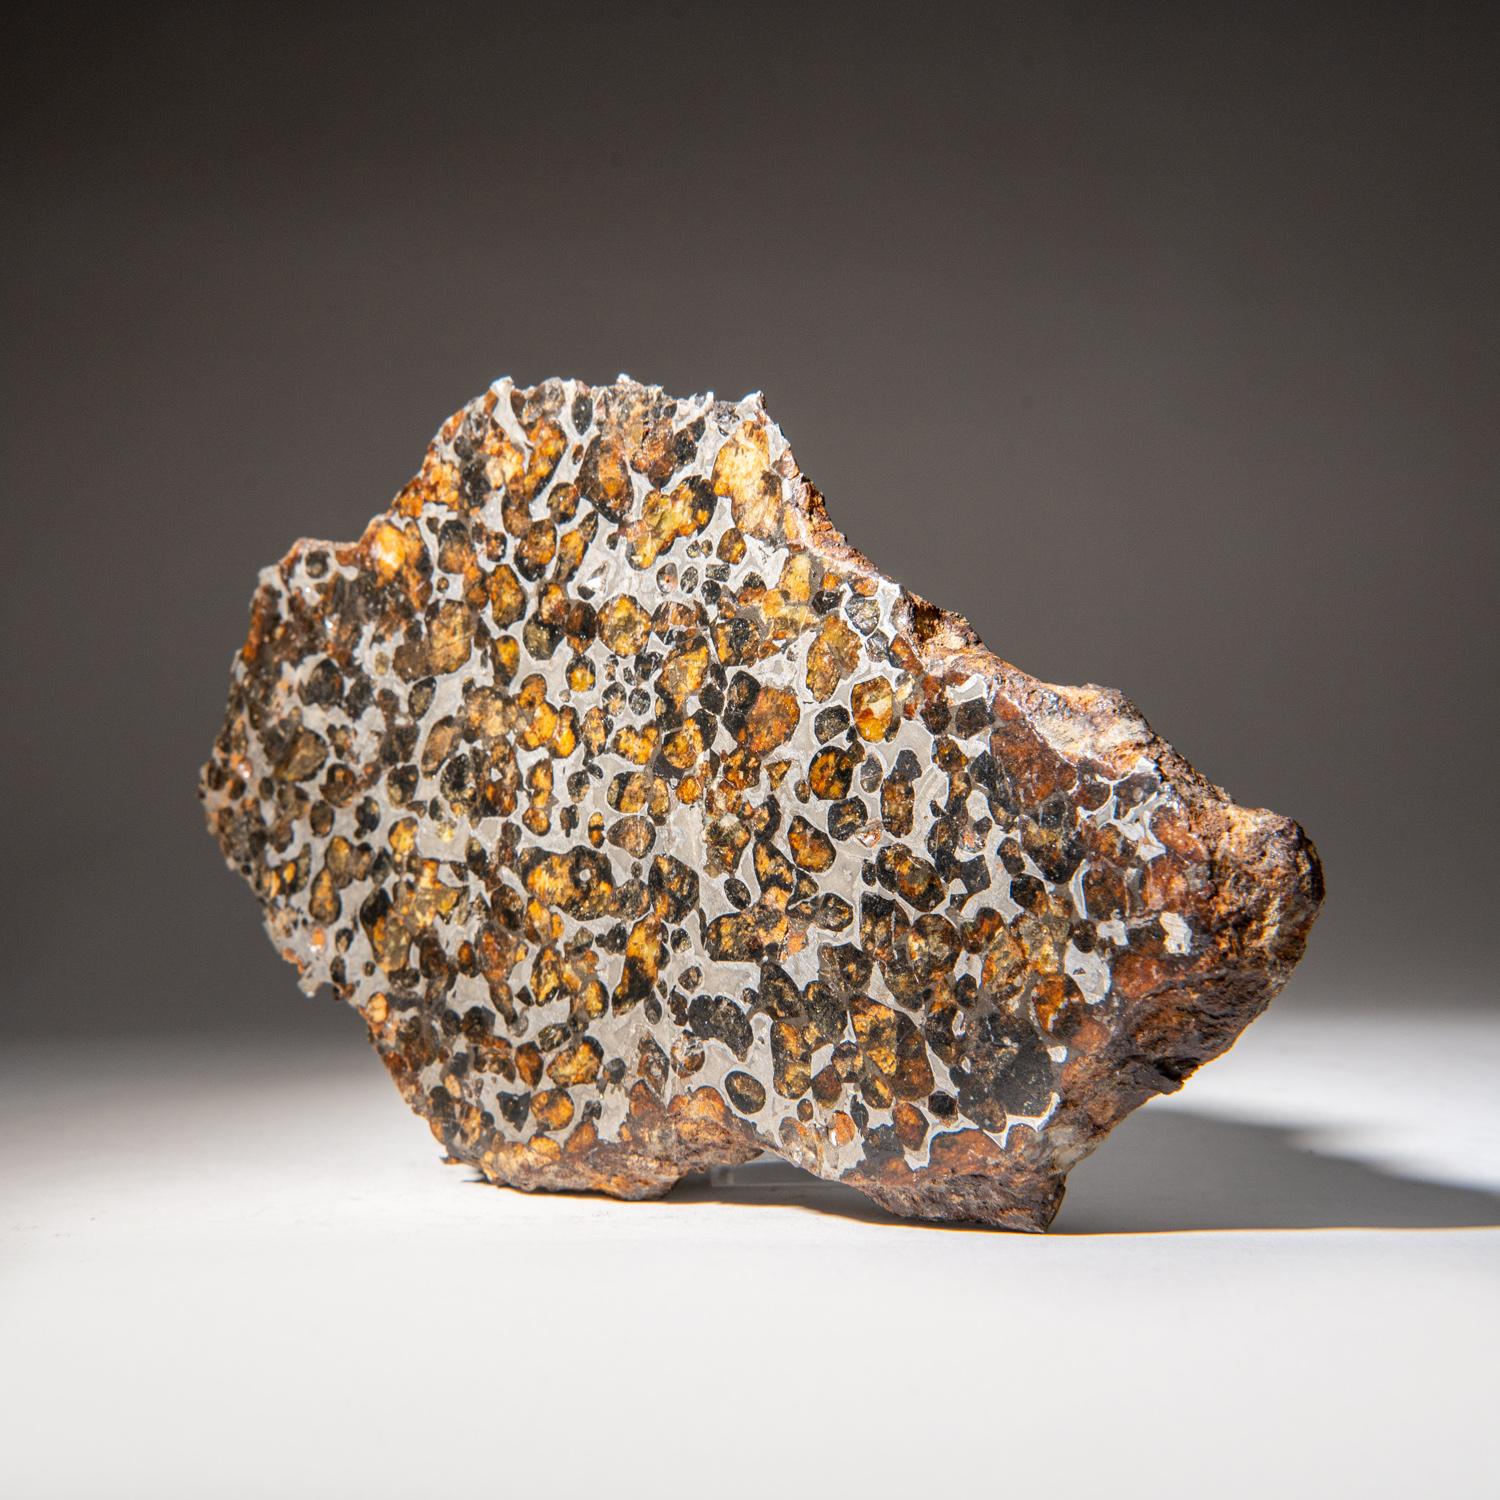 Kenyan Genuine Sericho Pallasite Meteorite Slab (2.45 lbs) For Sale